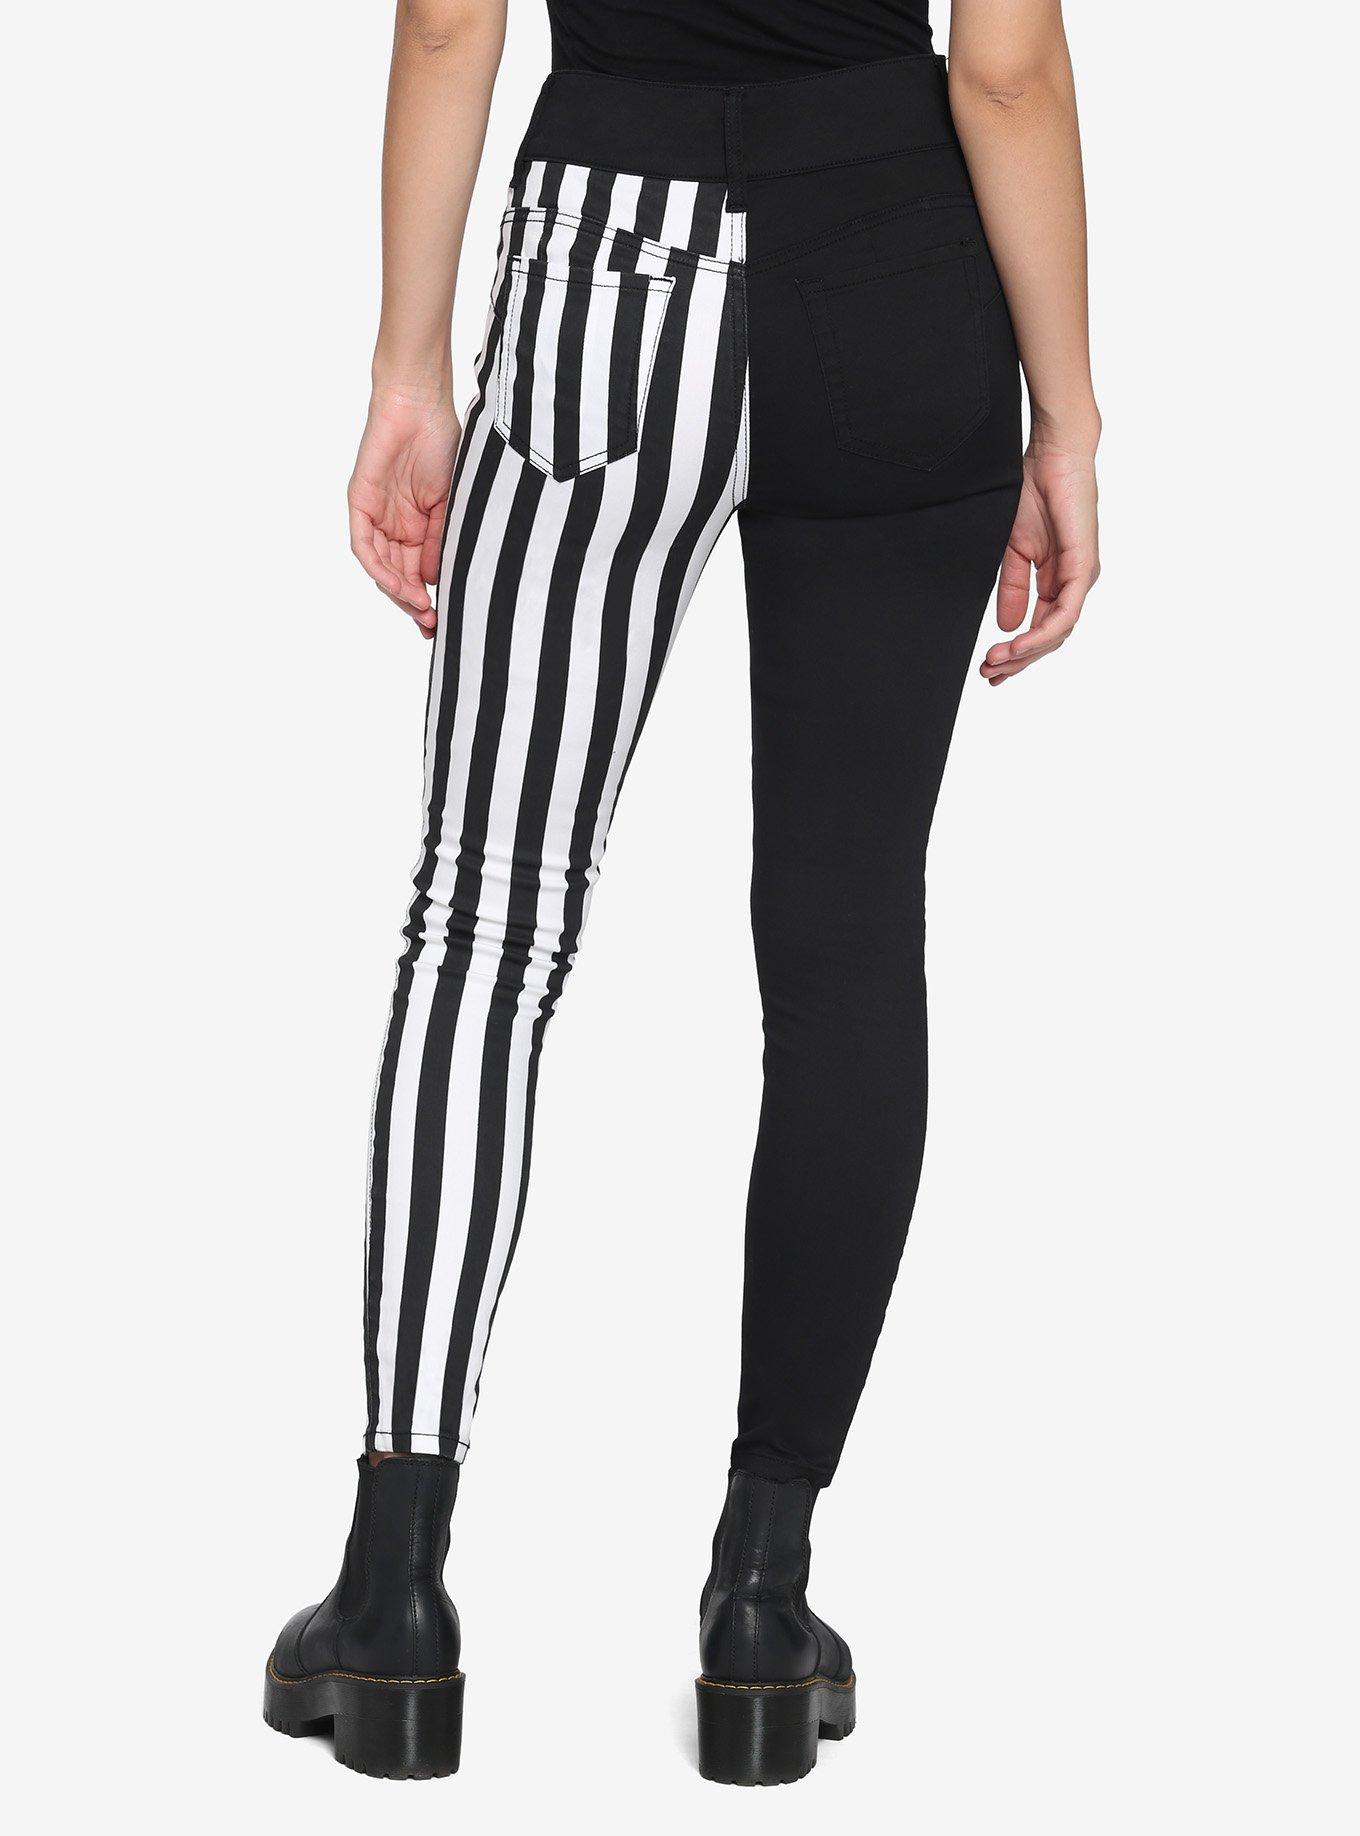 Black & White Stripe Split Leg Skinny Jeans, MULTI, alternate